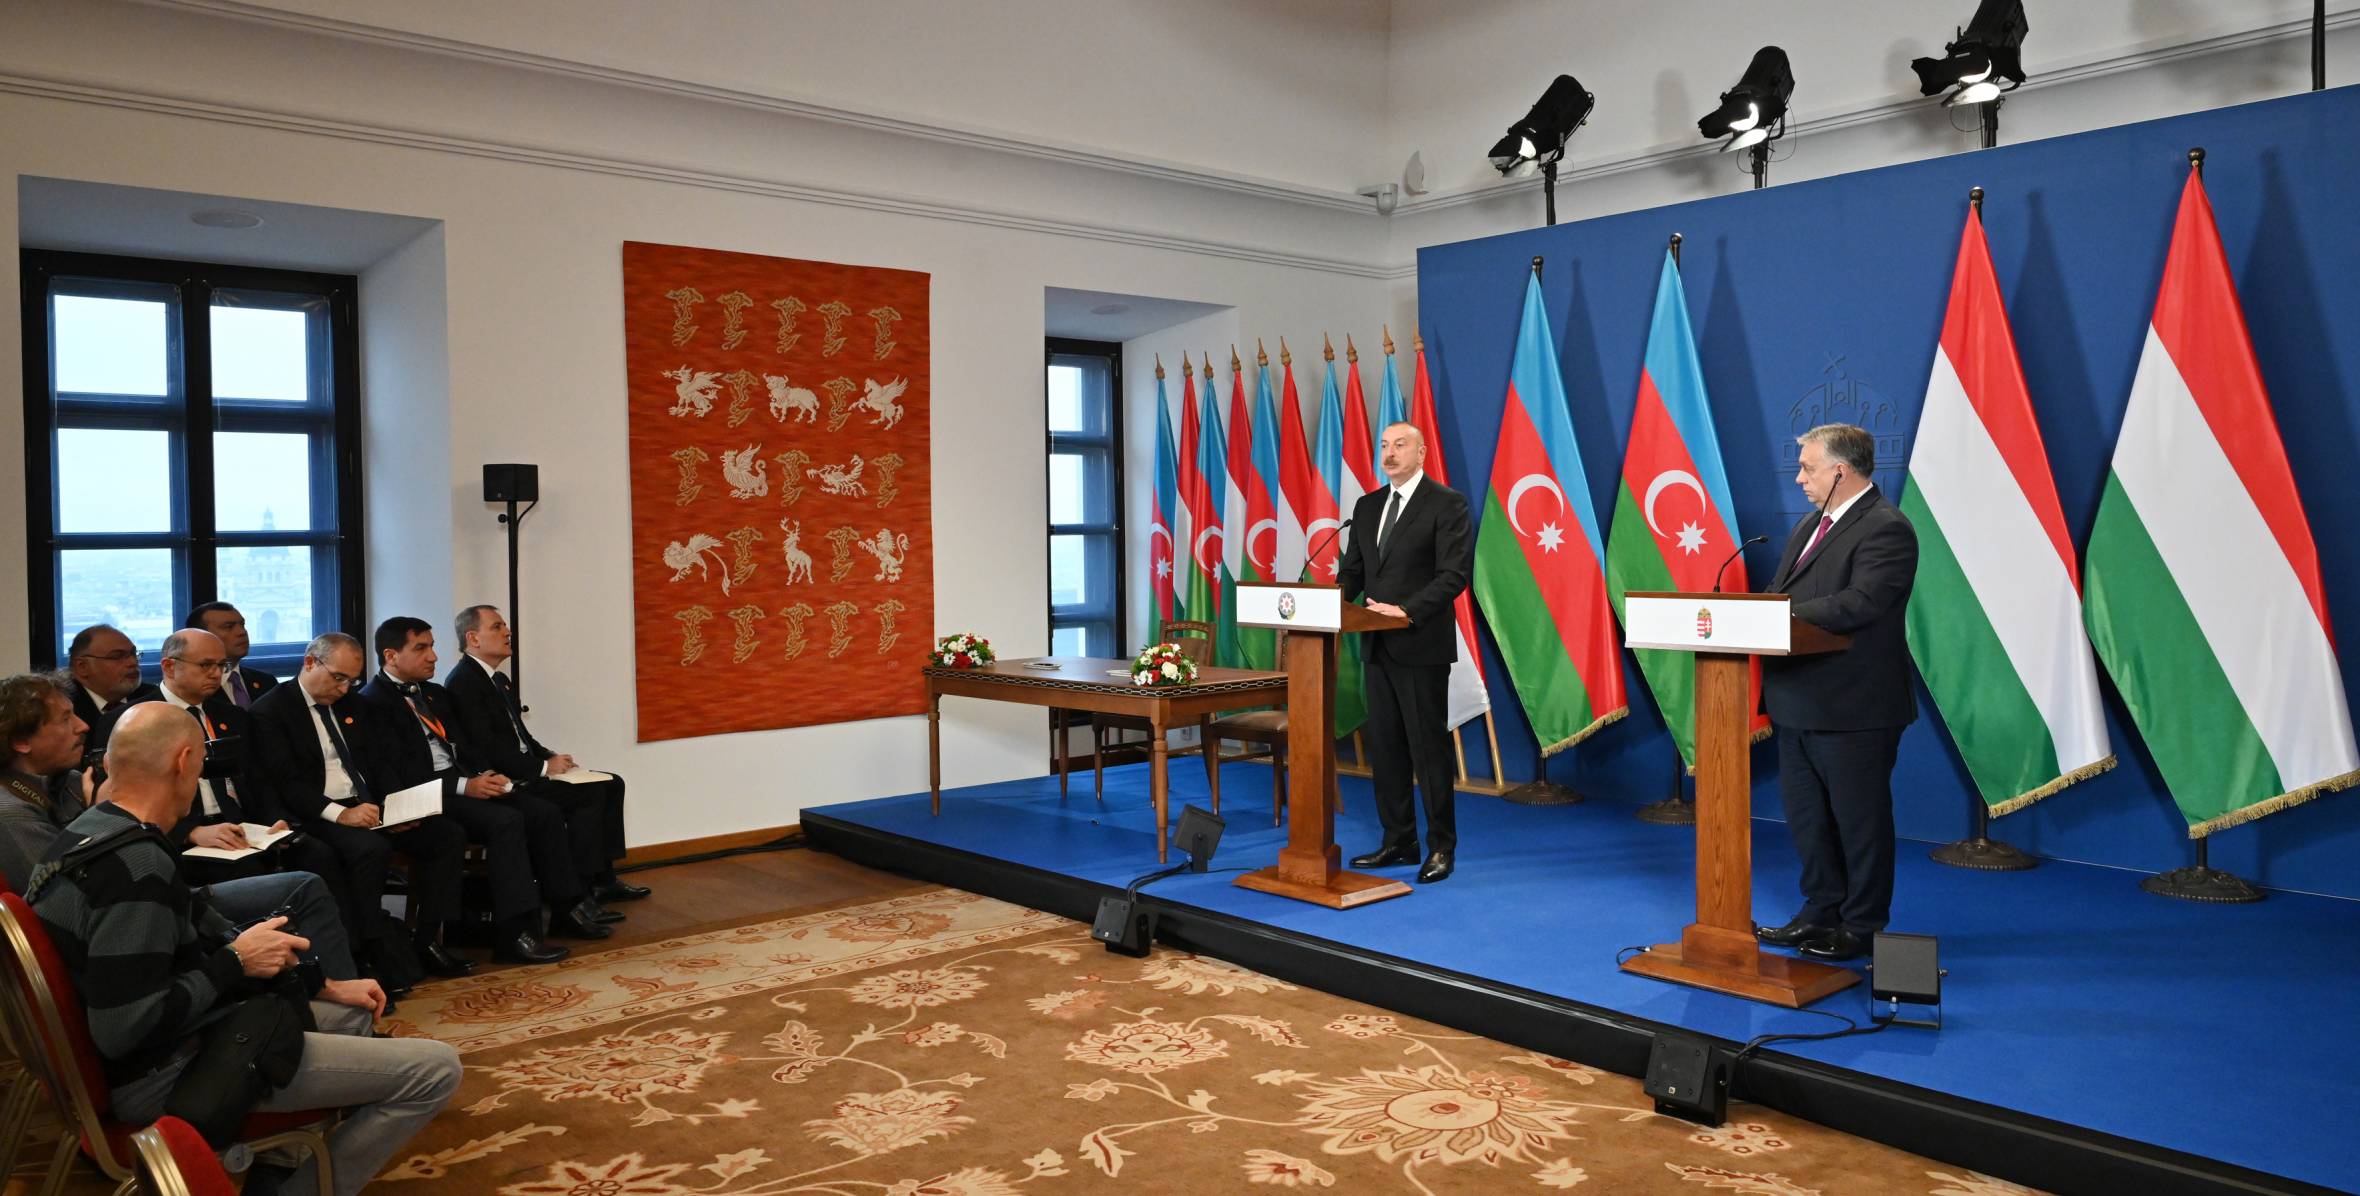 Ильхам Алиев и премьер-министр Венгрии Виктор Орбан выступили с заявлениями для прессы